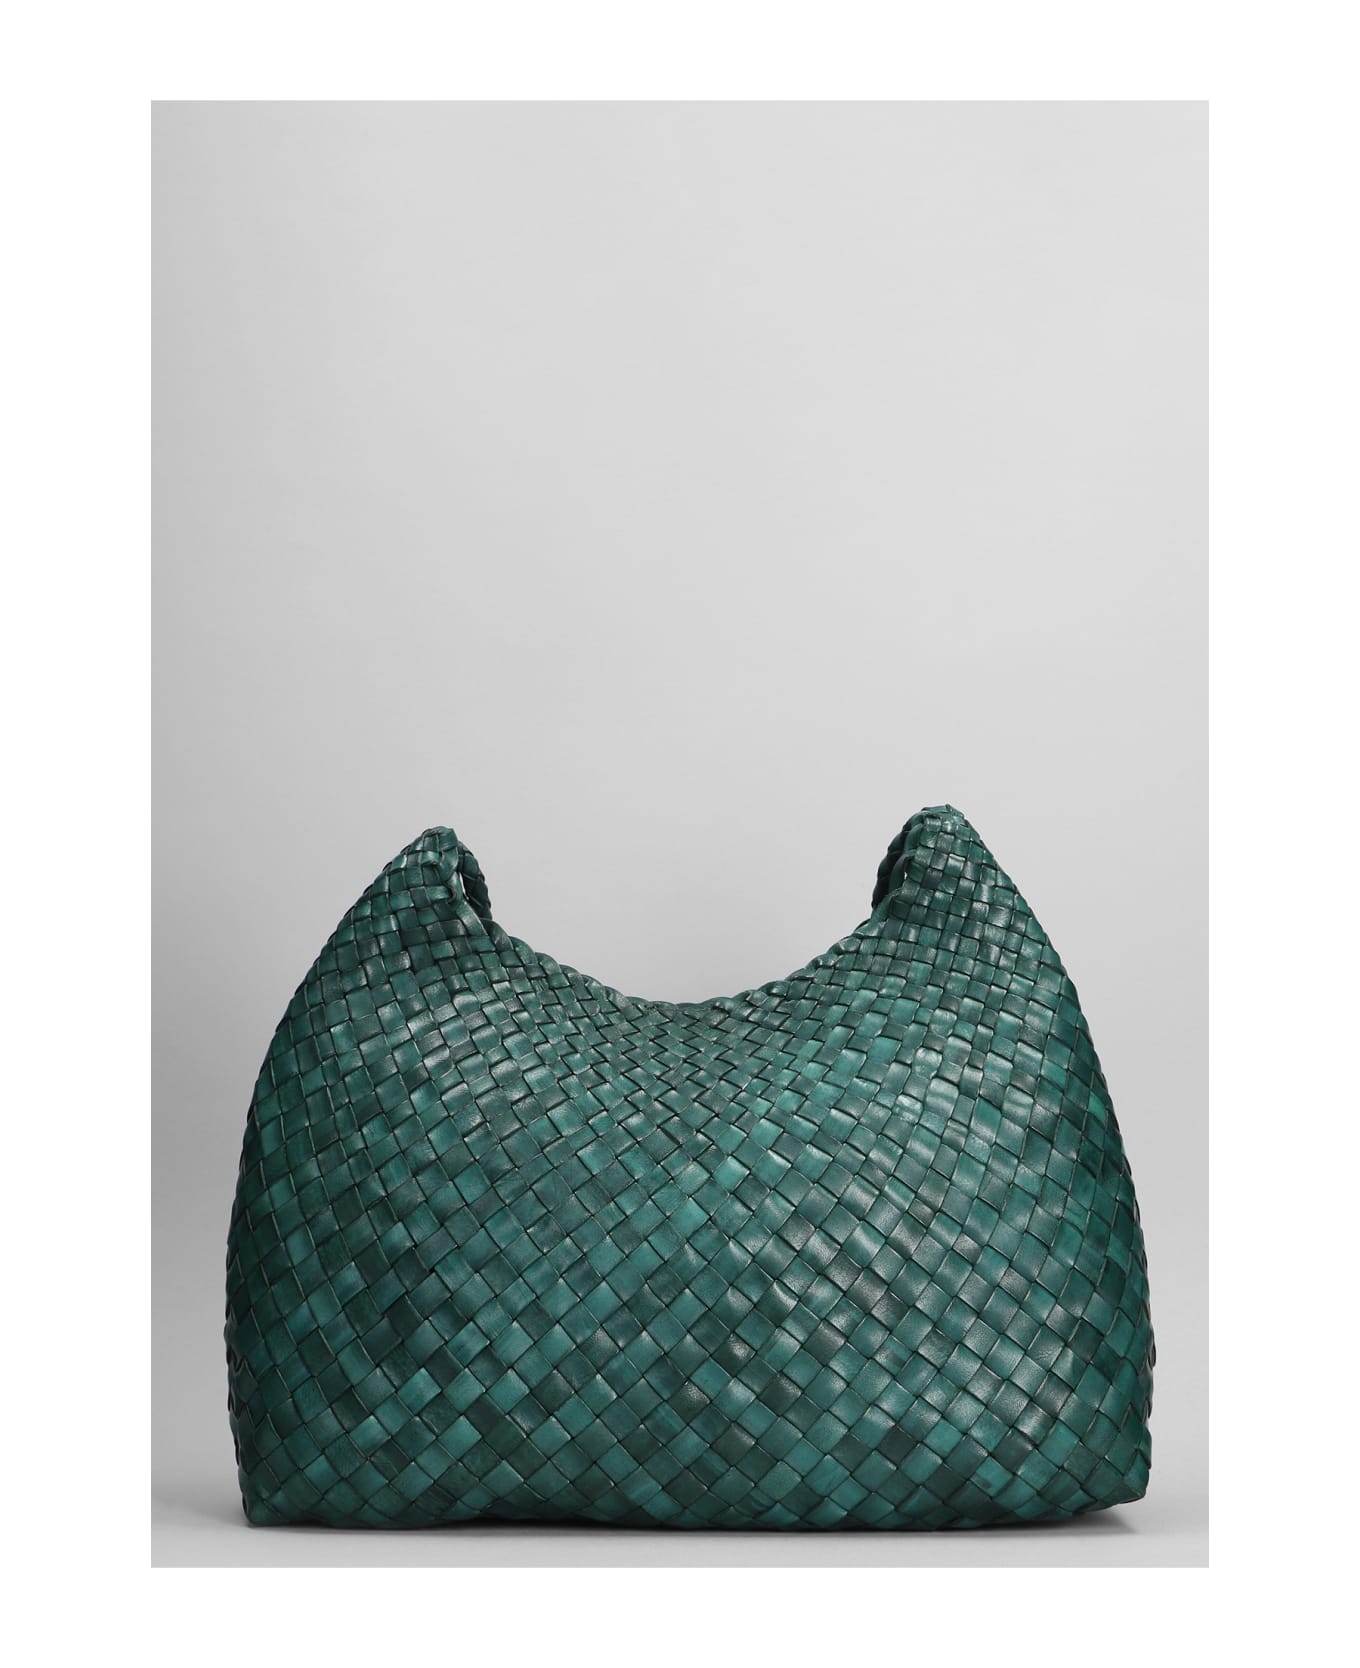 Dragon Diffusion Santa Rosa Shoulder Bag In Green Leather - green